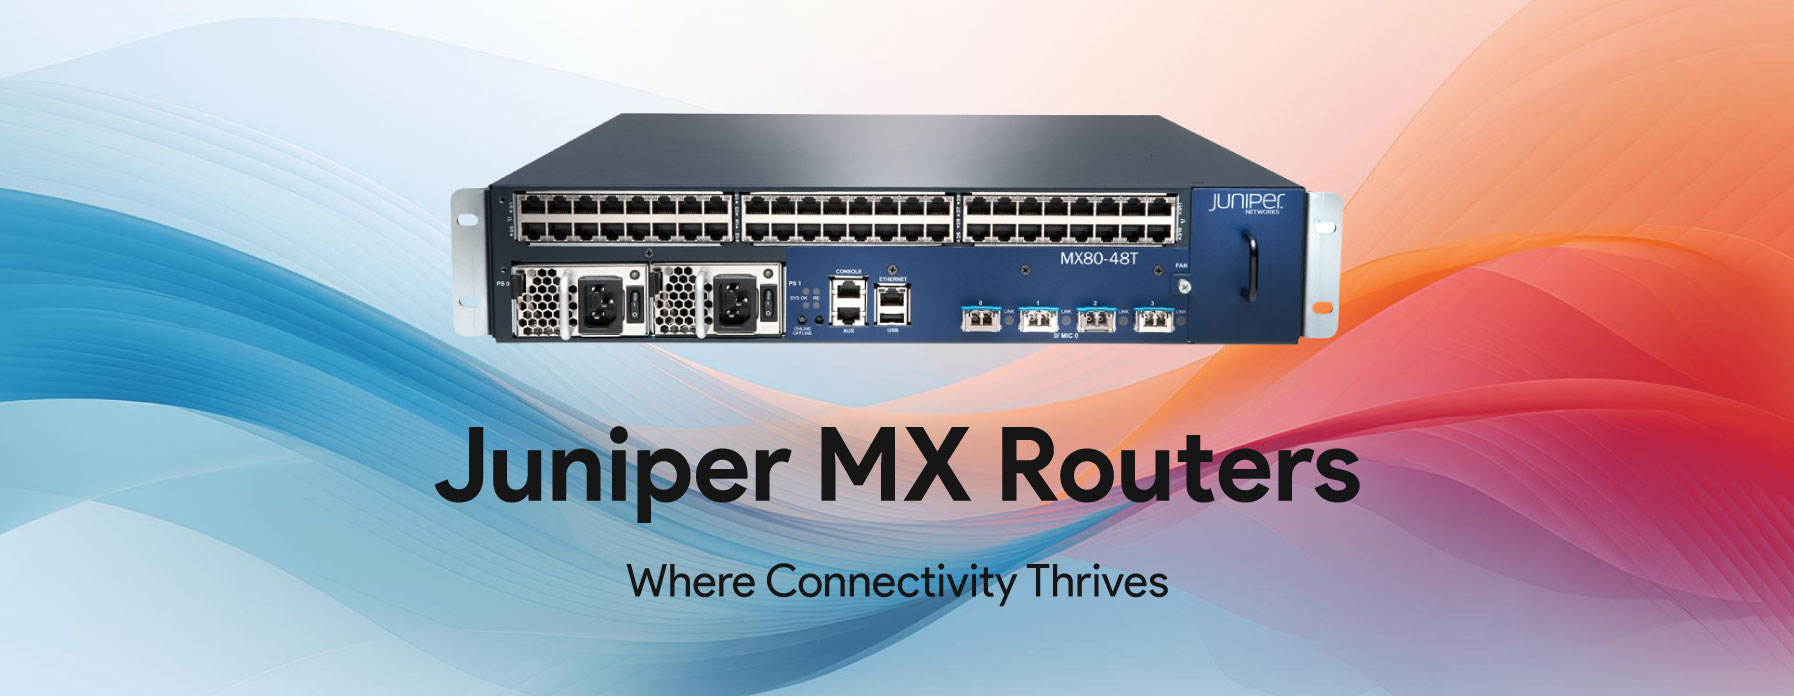 Juniper-MX-Routers